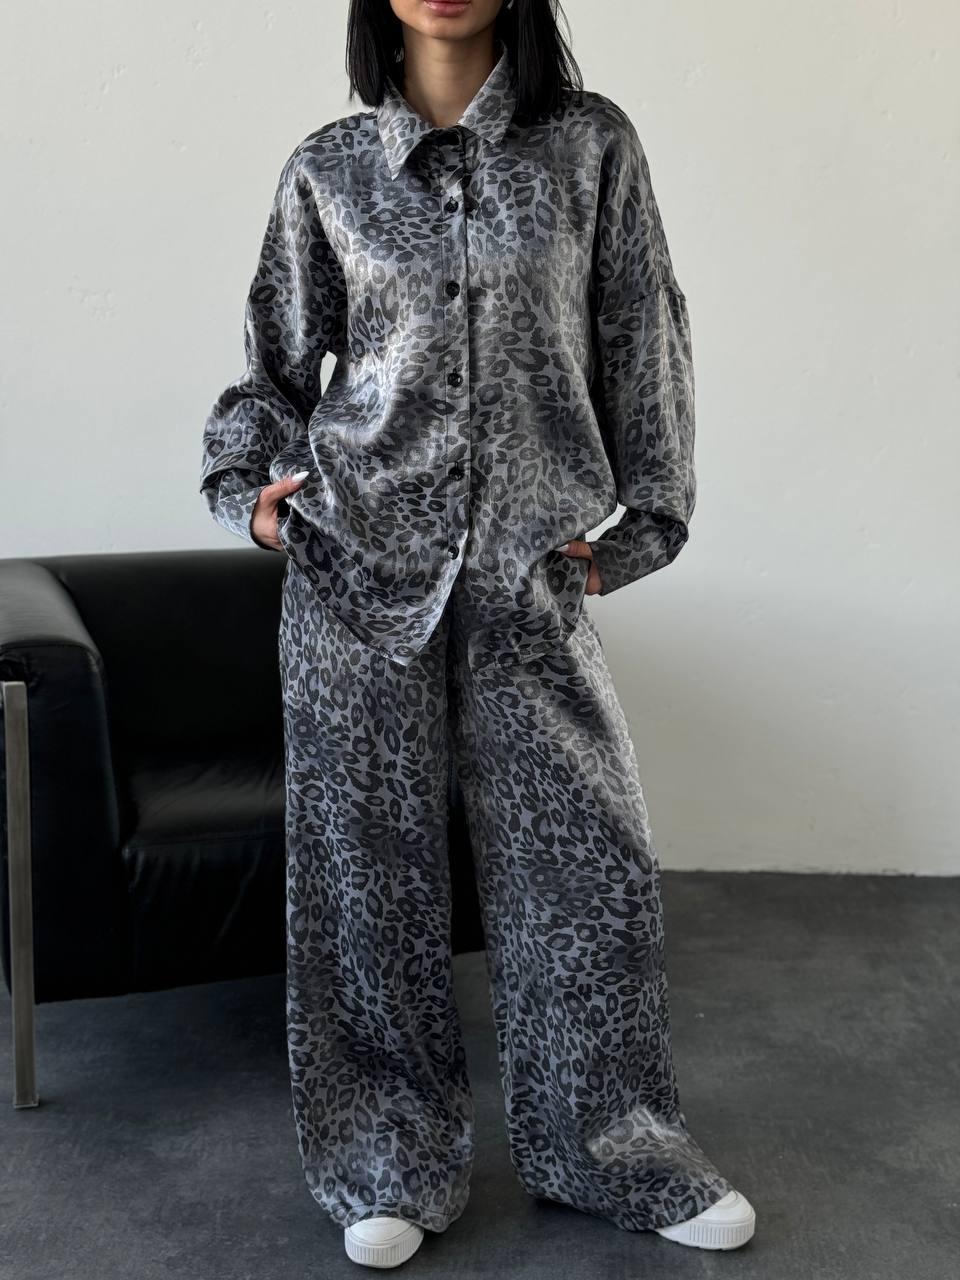 Жіночий шовковий брючний костюм вільного крою з леопардовим принтом Арт. 180